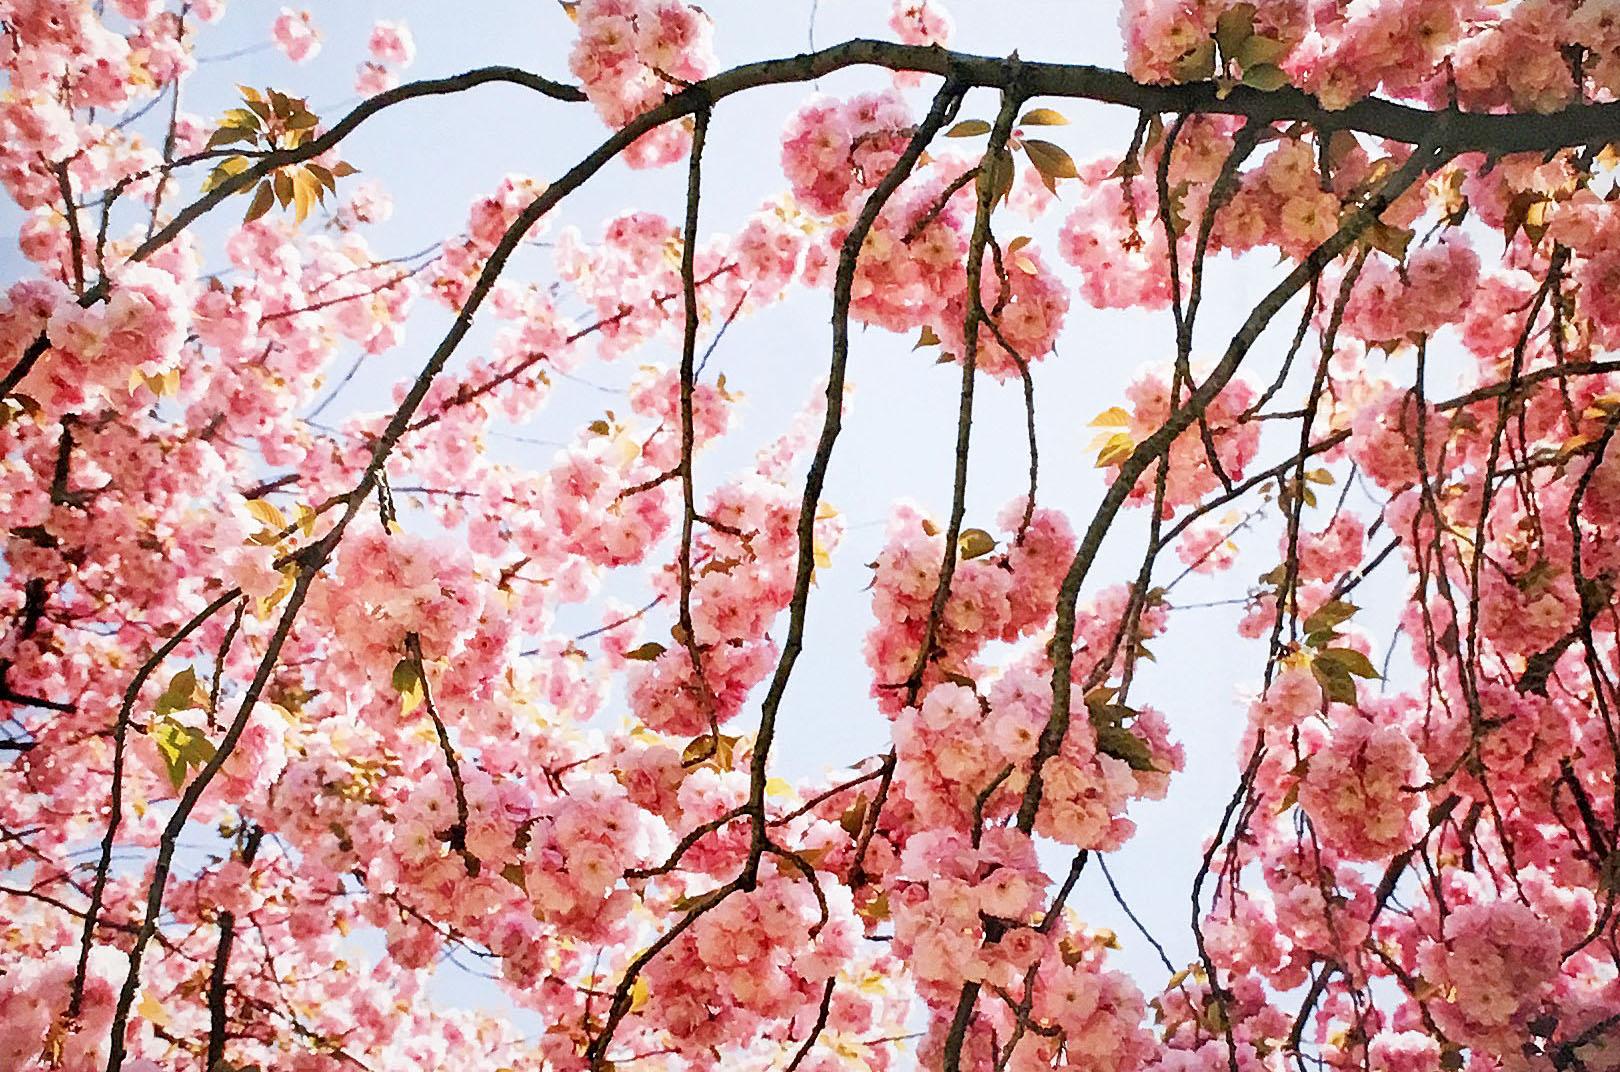 Cherry Blossom 2" 2002 par Susan Wides. Épreuve chromogène, 20 x 30 po. / 27 x 37 in. (cadre). Cette photo couleur de 2002 présente une vue rapprochée de plusieurs branches de cerisiers et de leurs fleurs.  Dans un cadre blanc.

La photographe